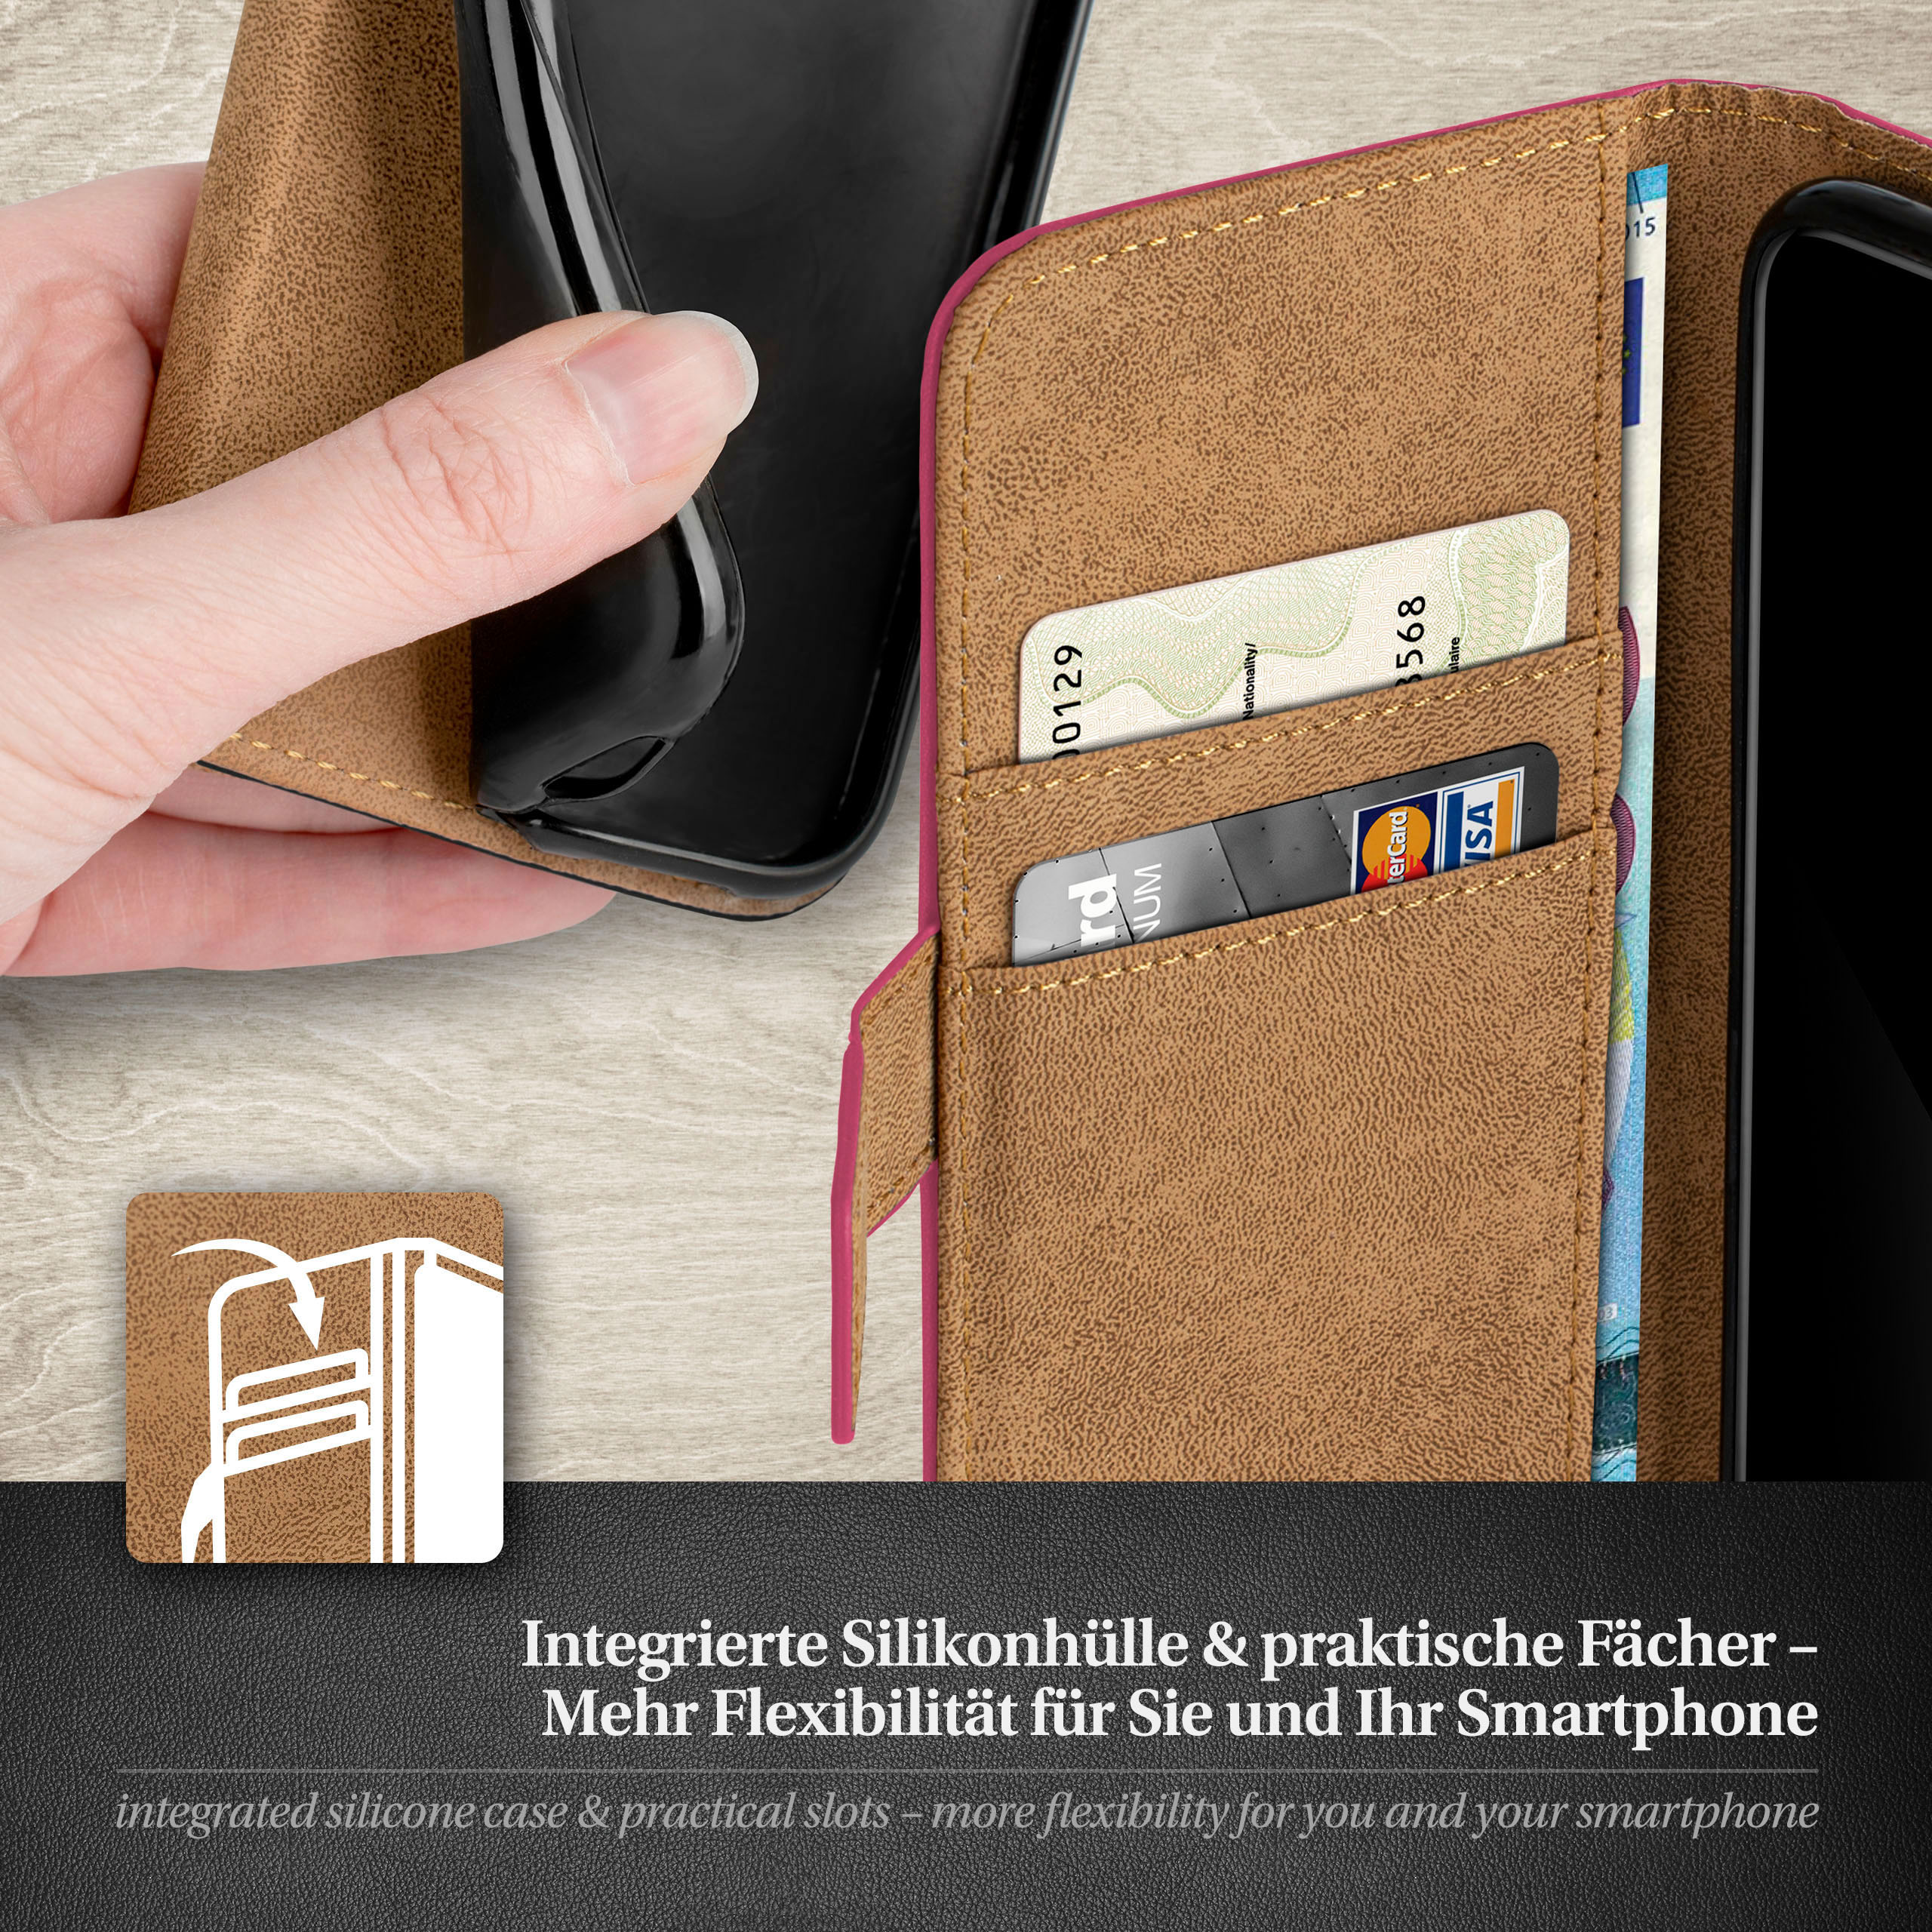 MOEX Book Case, Bookcover, S3 S3 / Galaxy Berry-Fuchsia Neo, Samsung